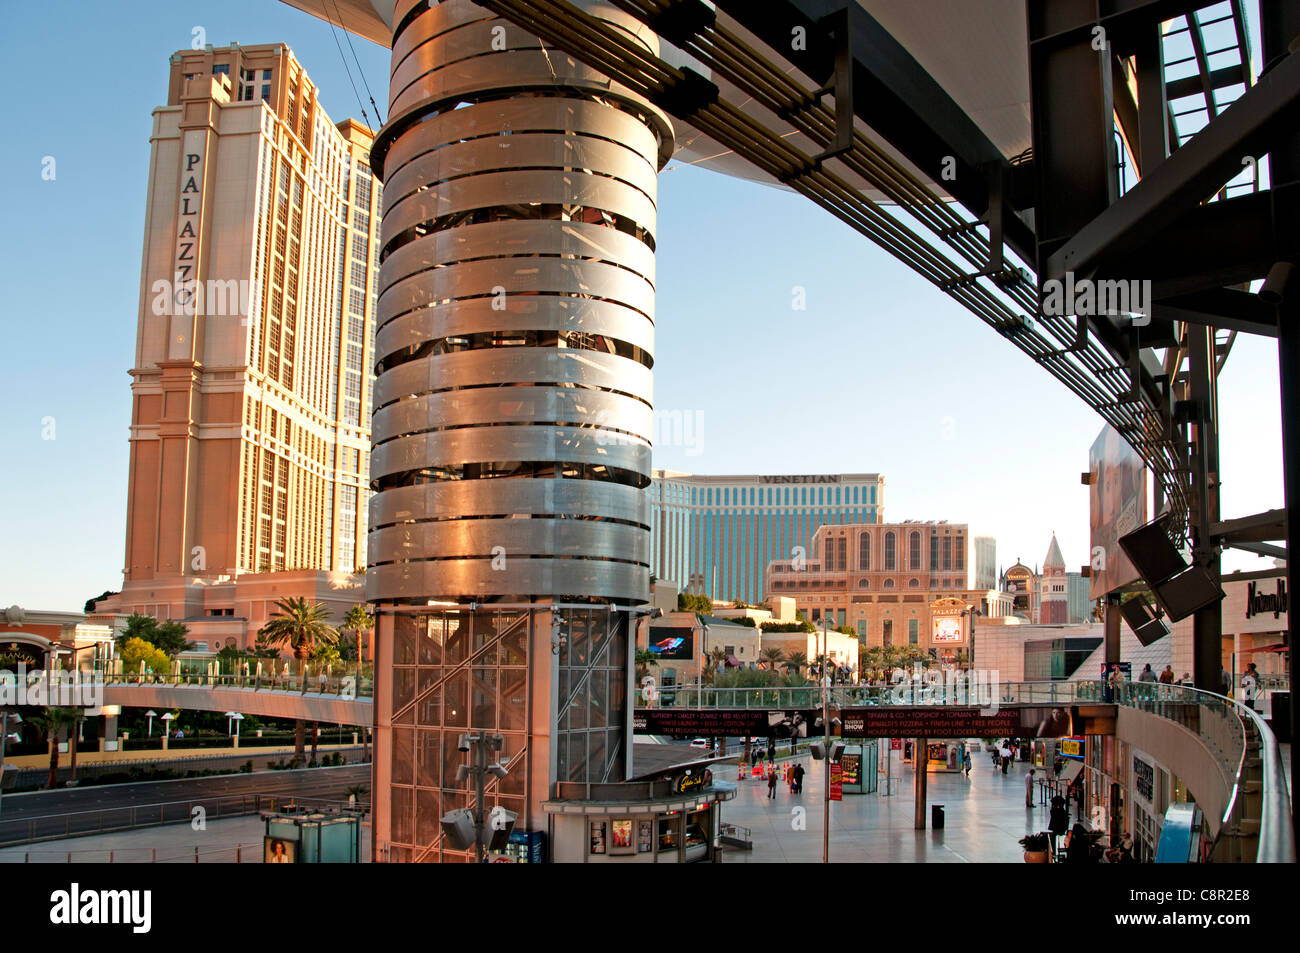 Las Vegas Fashion Show Mall striscia negli Stati Uniti Foto Stock